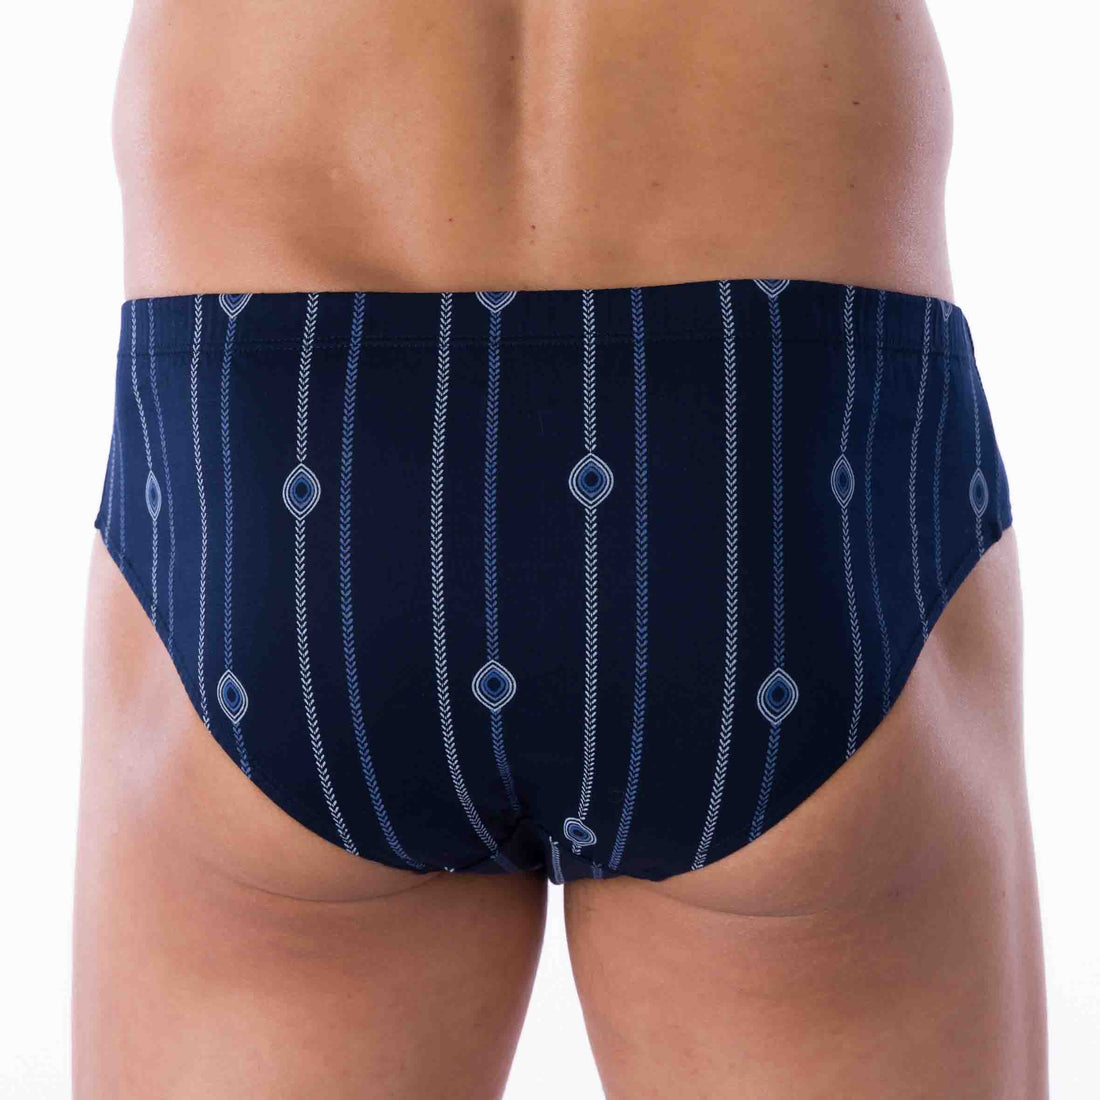 Le Slip Mariner – Mariner underwear